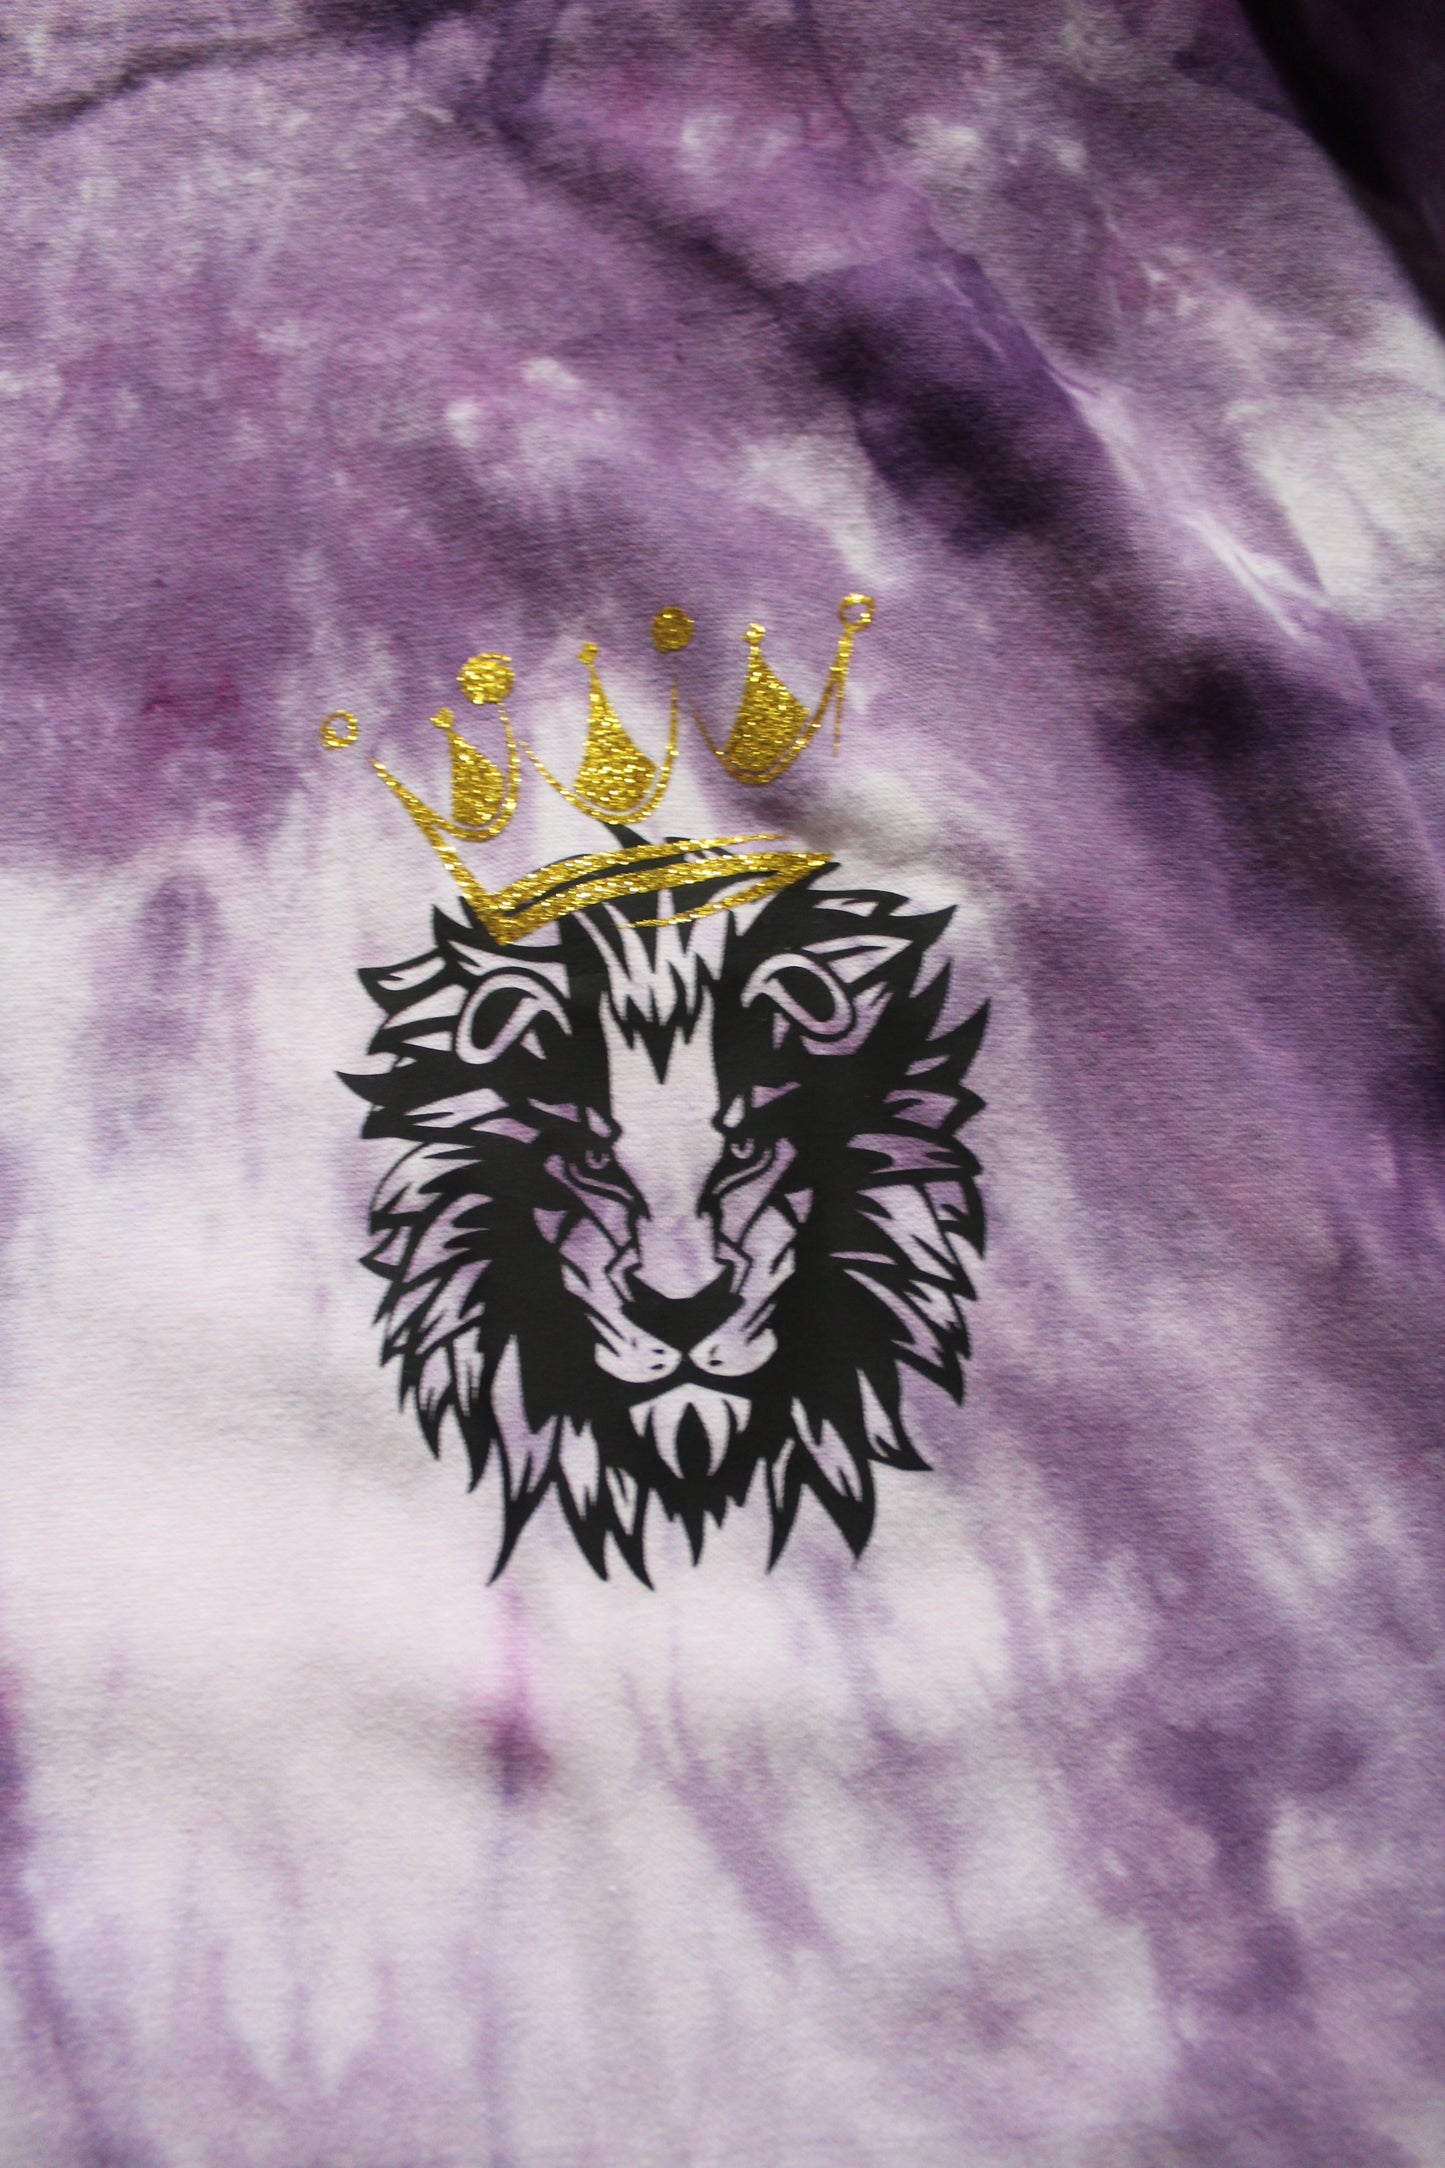 Jungle King purple T-shirt